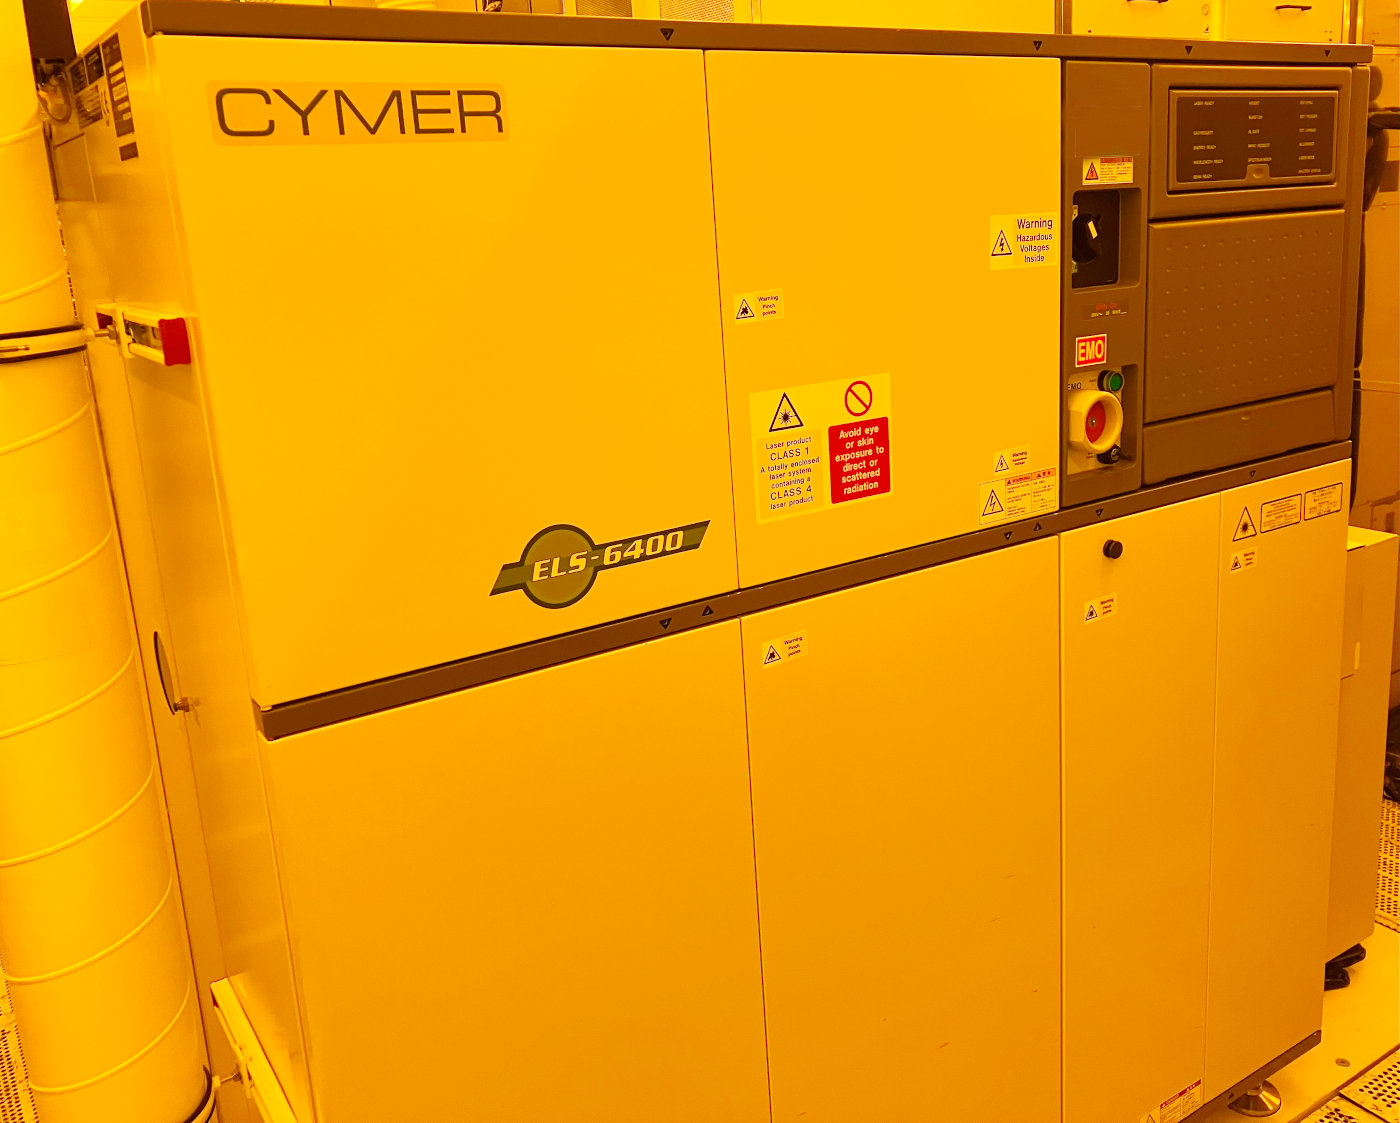 Cymer ELS 6400 